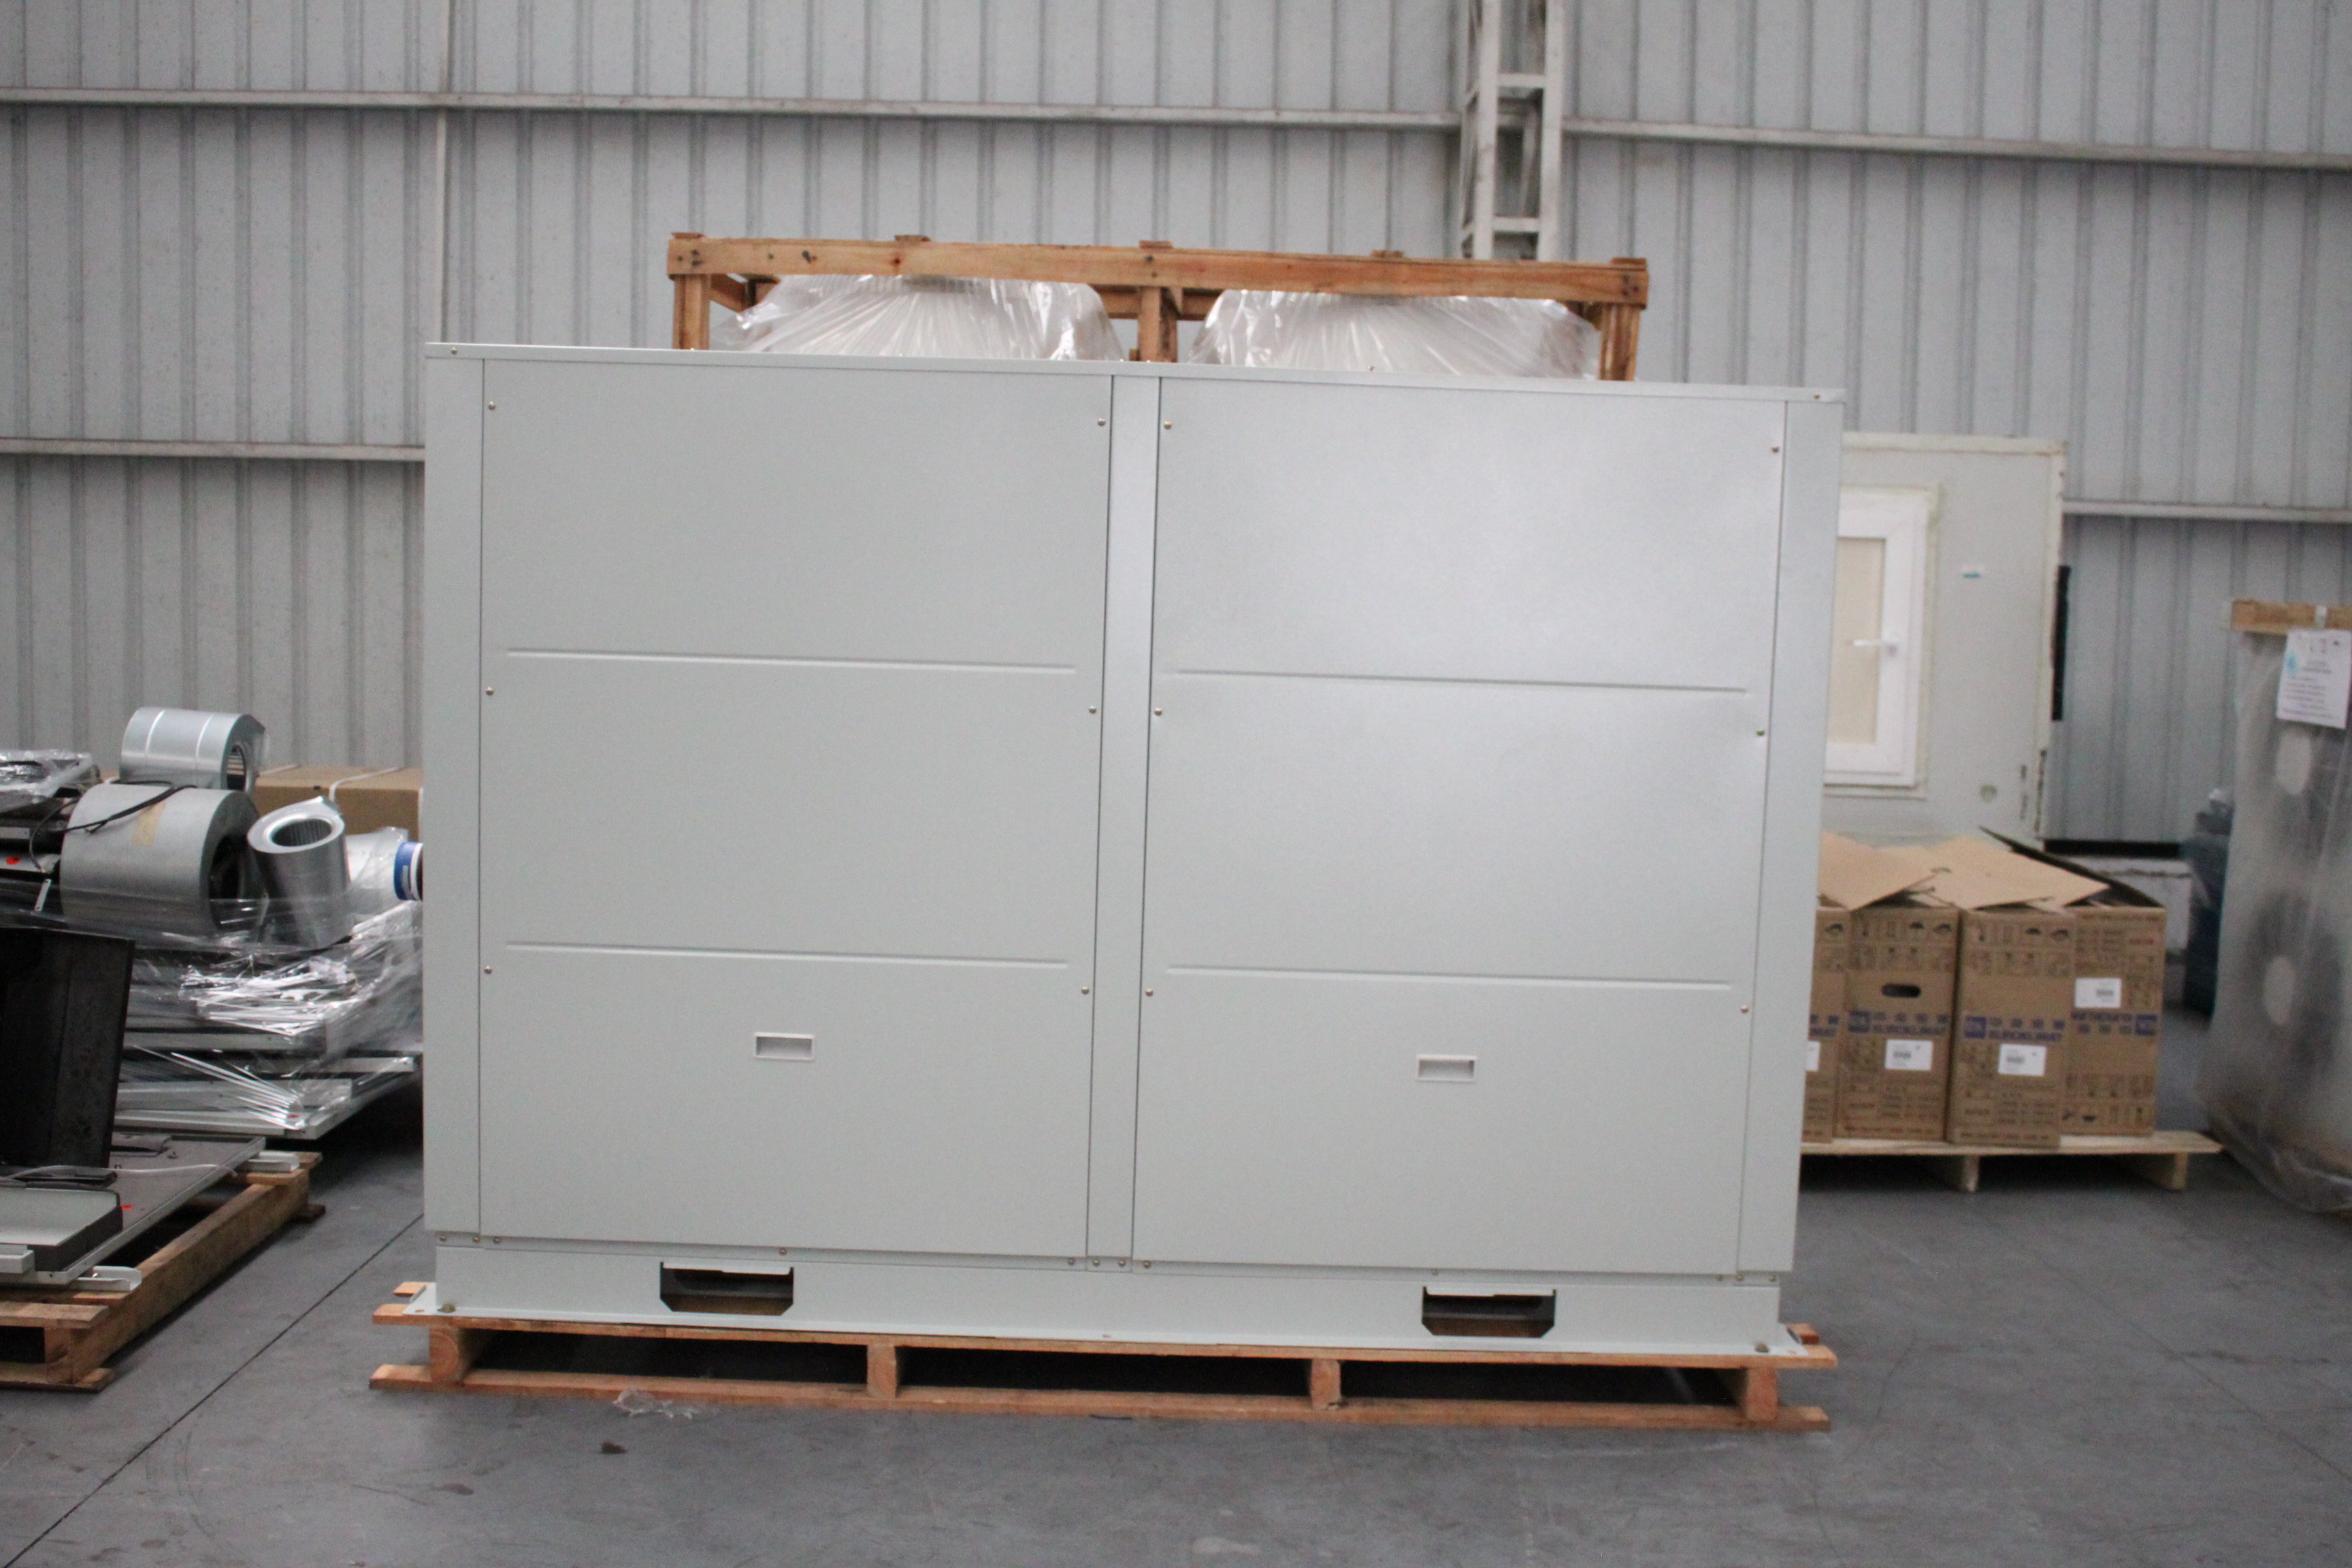 Réfrigérateur refroidi à l'eau de rouleau de contrôle centralisé pour le climatiseur